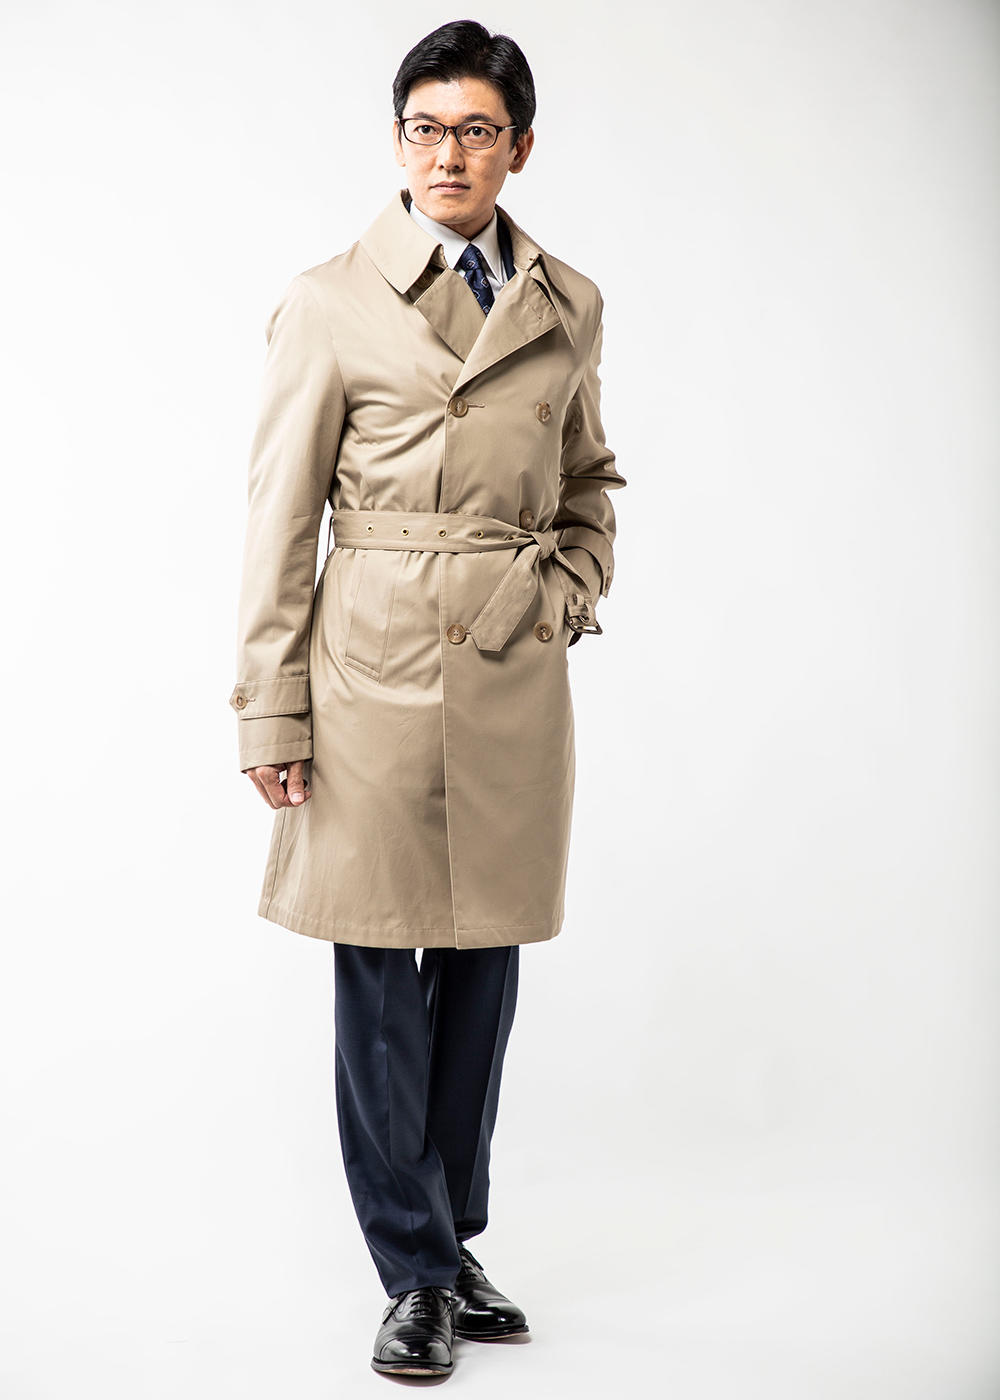 背が低い人のための技ありコート選びの鉄則～大人のための賢いコート選び【4】 | PRESIDENT STYLE